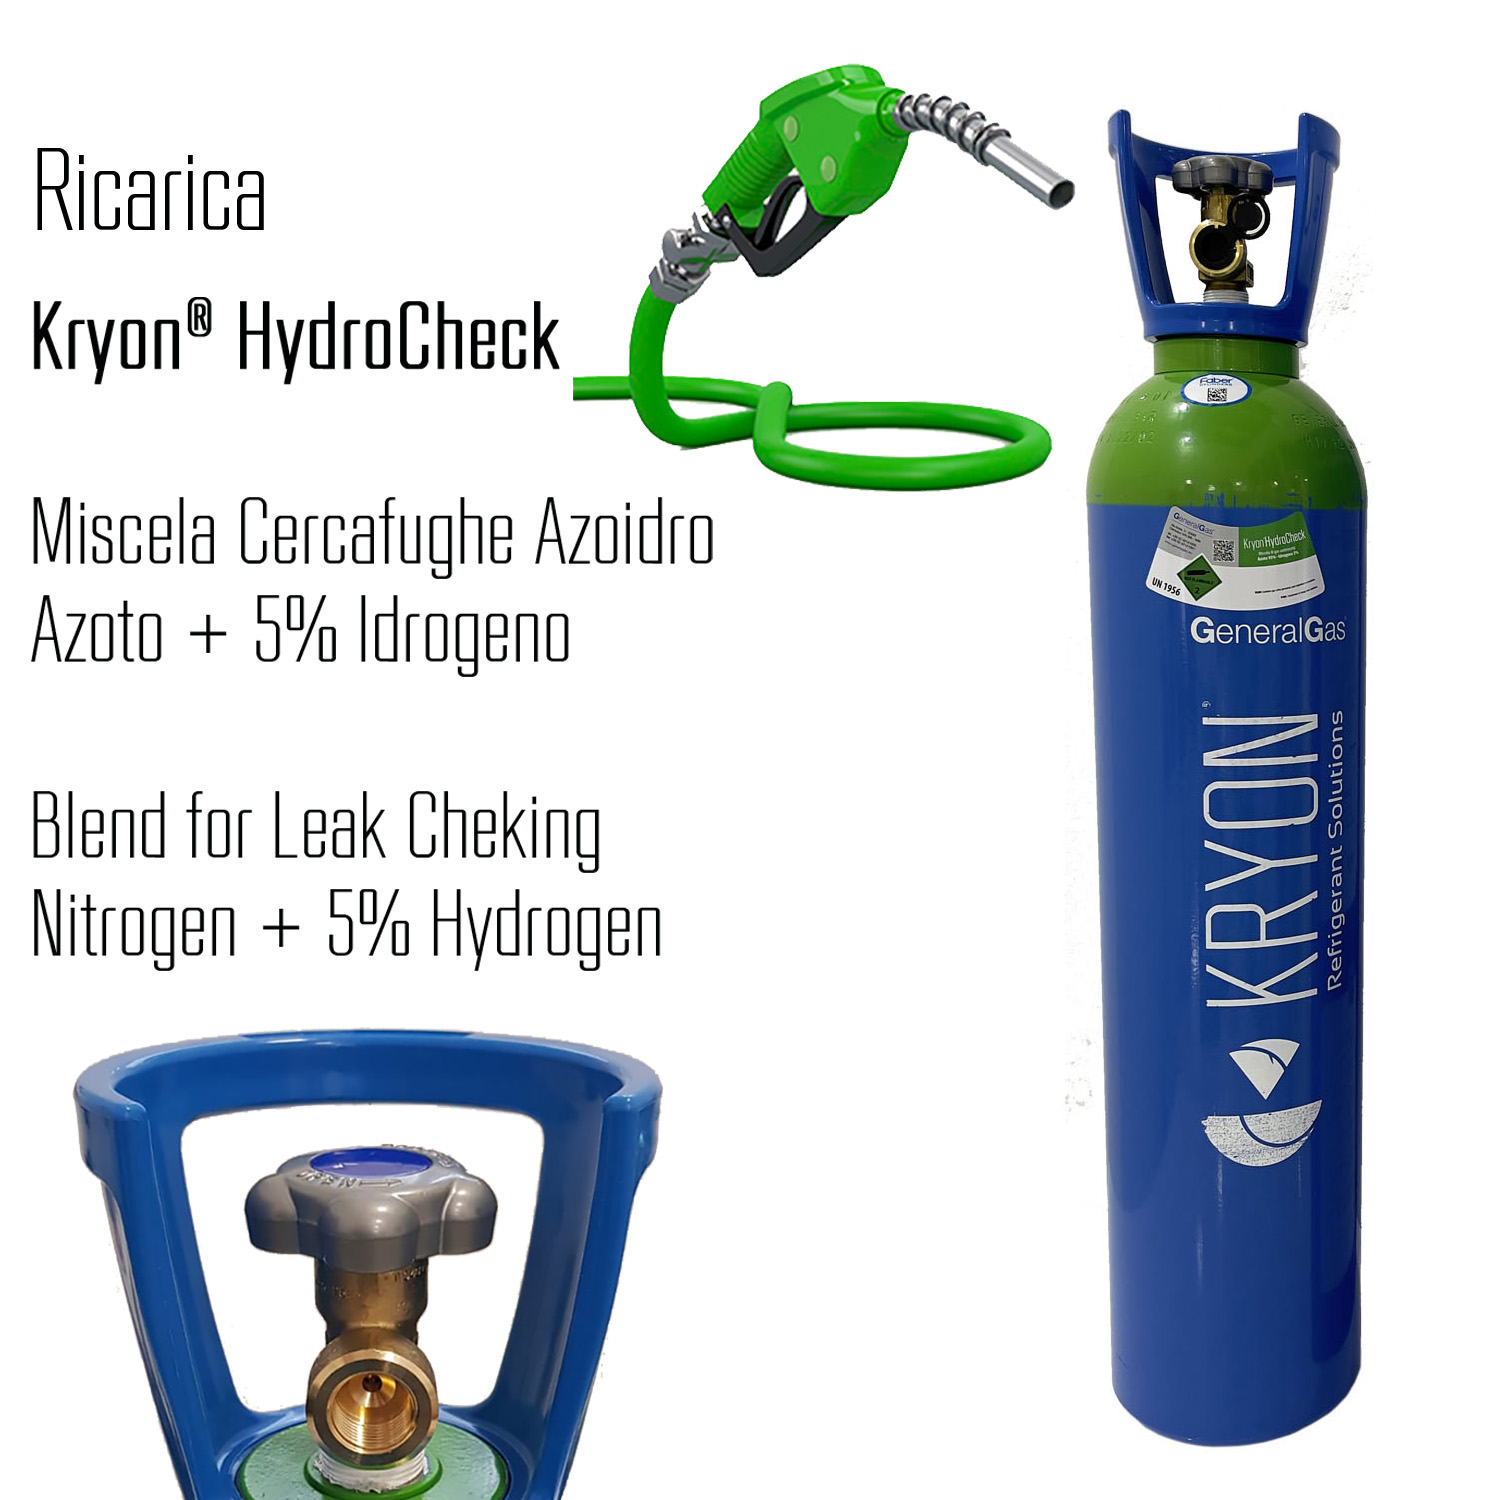 Ricarica HandyGas (cambio immediato vuoto contro pieno) per bombola Kryon® HydroCheck 14 lt - 200 bar  (3 mc di mix azoto idrogeno 5%)